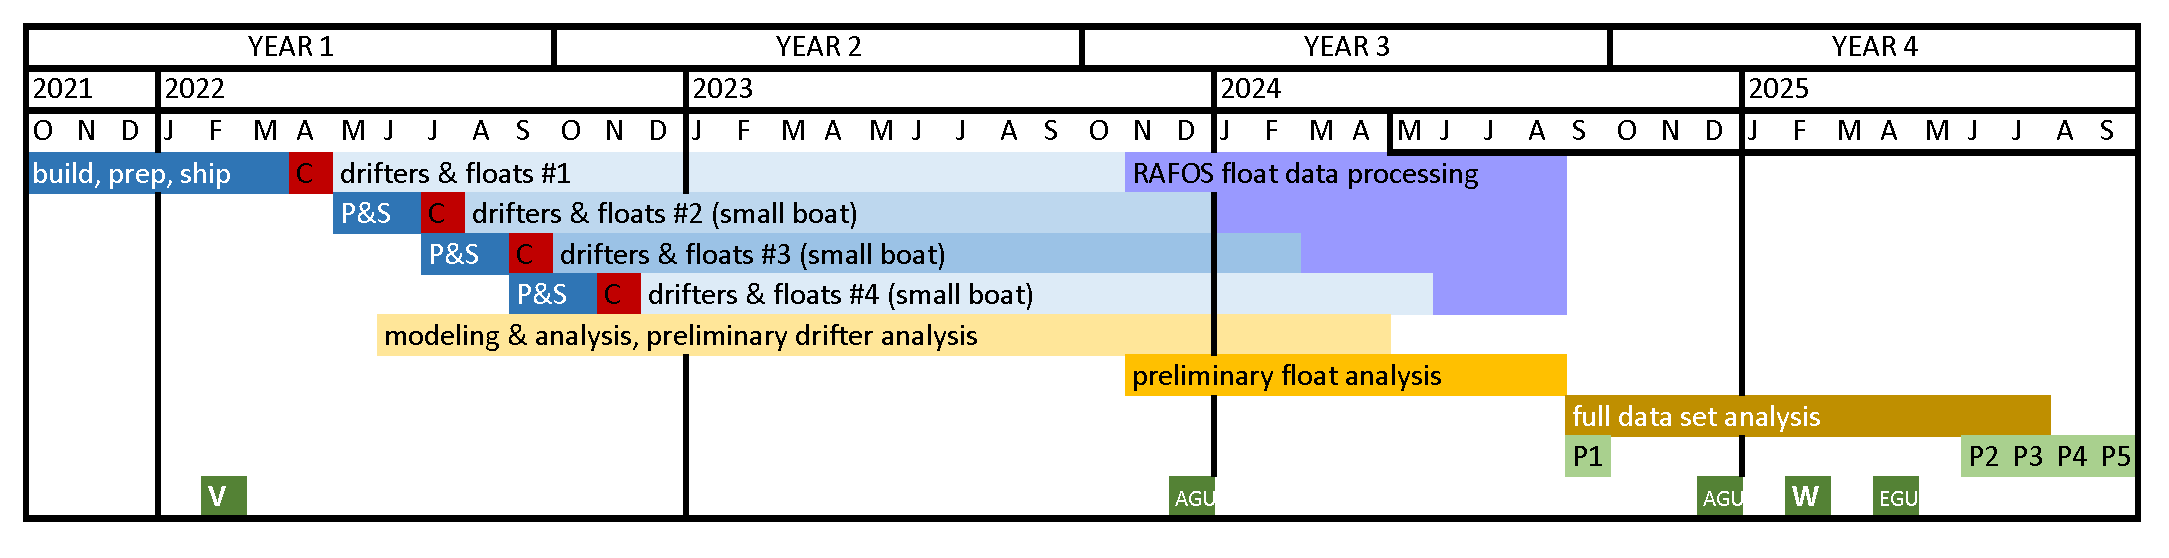 original East Madagascar Current project timeline